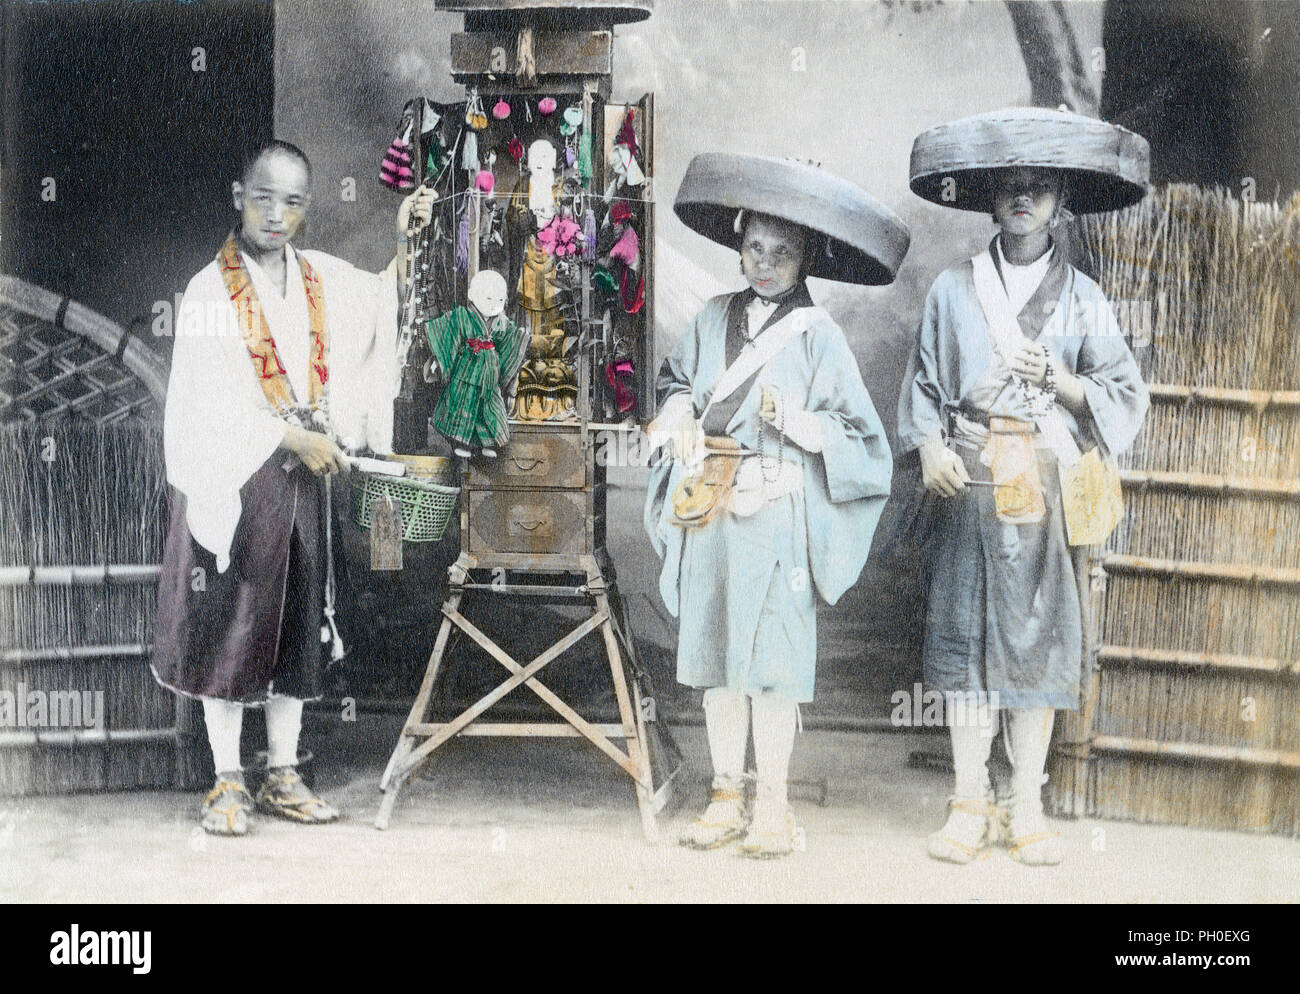 [1890s Japan - Pilger mit einem tragbaren buddhistische Heiligtum] - Drei Pilger mit einem tragbaren buddhistische Heiligtum. Die beiden Menschen auf der rechten Seite tragen Kaki (Bambus Hüte) sind Pilger Bettler bekannt als Hachitataki. Sie würden von Haus zu Haus, am vorderen Eingang und Gesang stehen, während die Glocken läuten hängen von ihren Gürtel. Das ursprüngliche Bild ist klein, so dieses Bild sich nicht gut für sehr große Verwendungen zu verleihen. 19 Vintage albumen Foto. Stockfoto